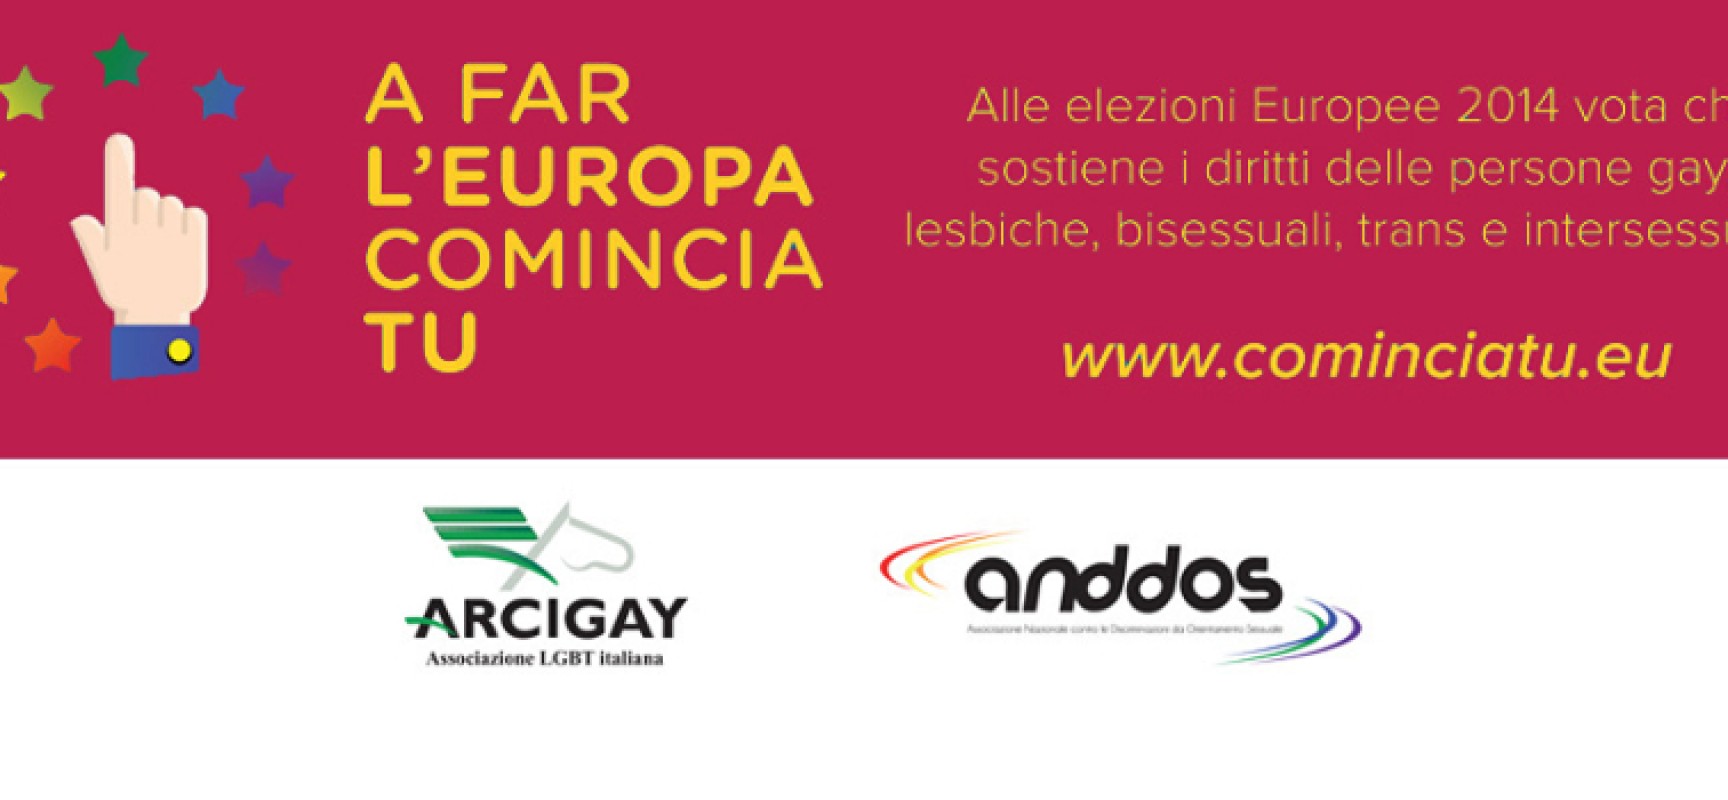 “A far l’Europa comincia tu”, campagna promossa da Arcigay